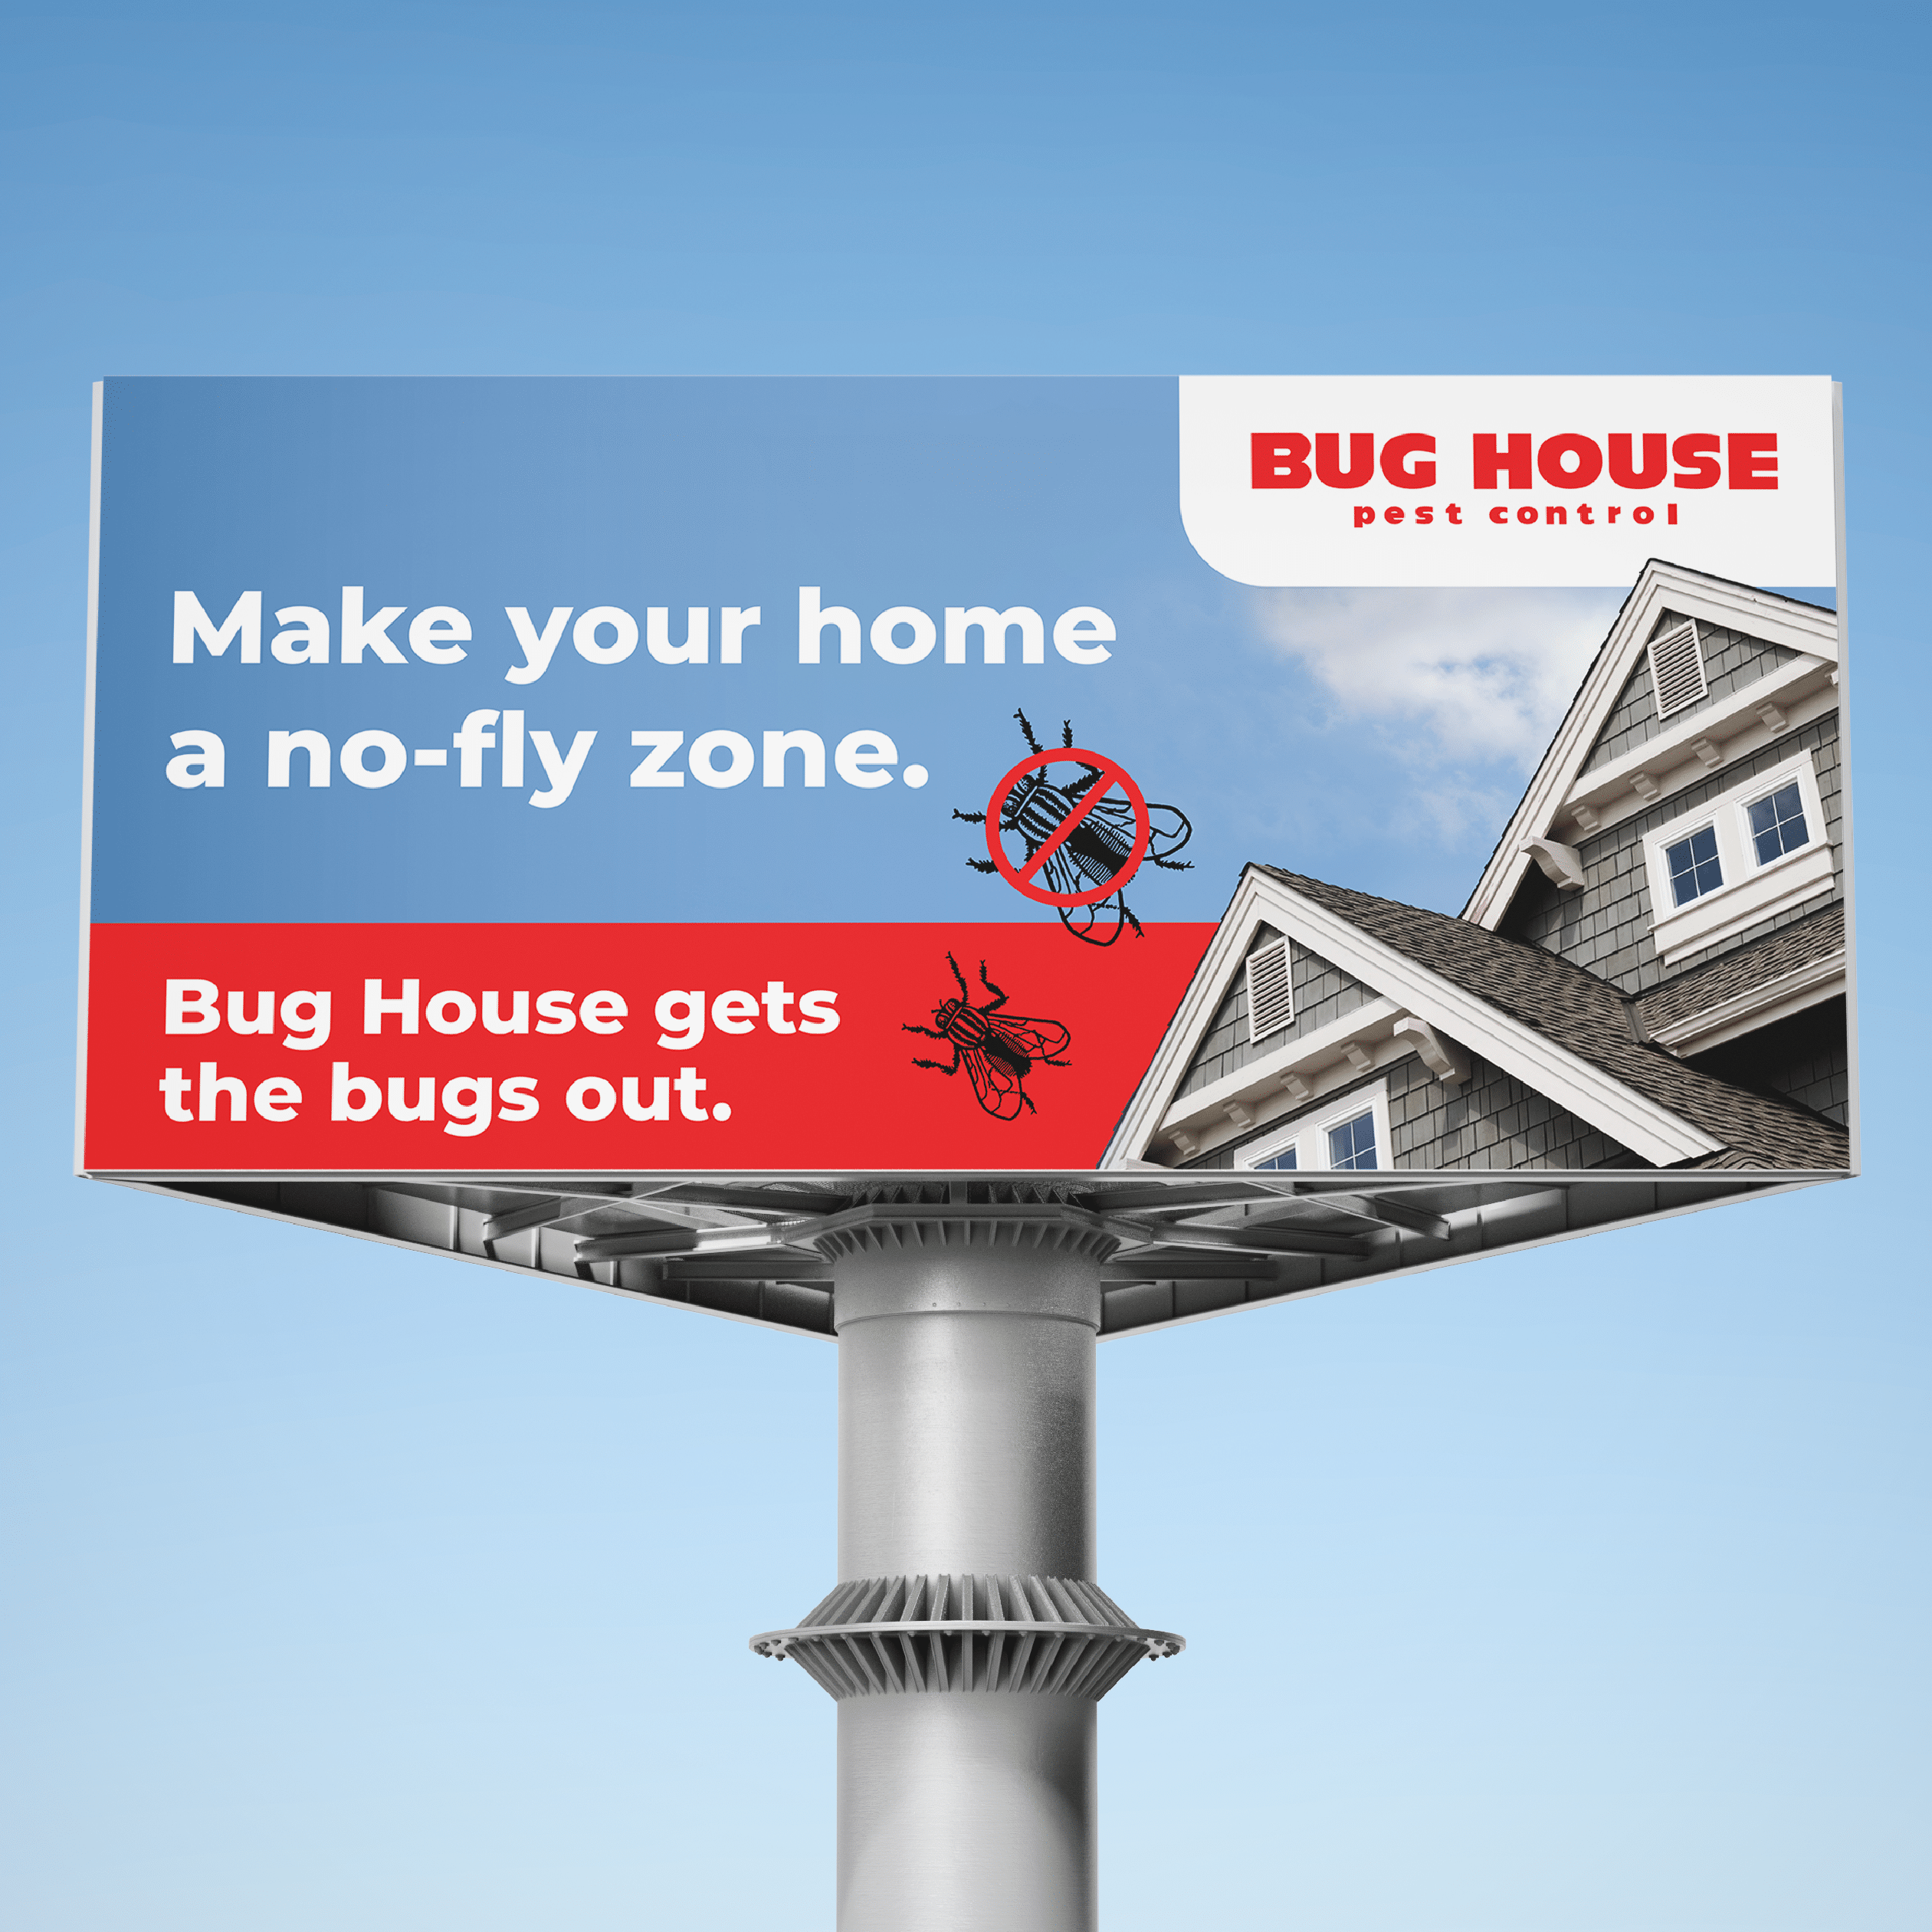 Bug House photos-03